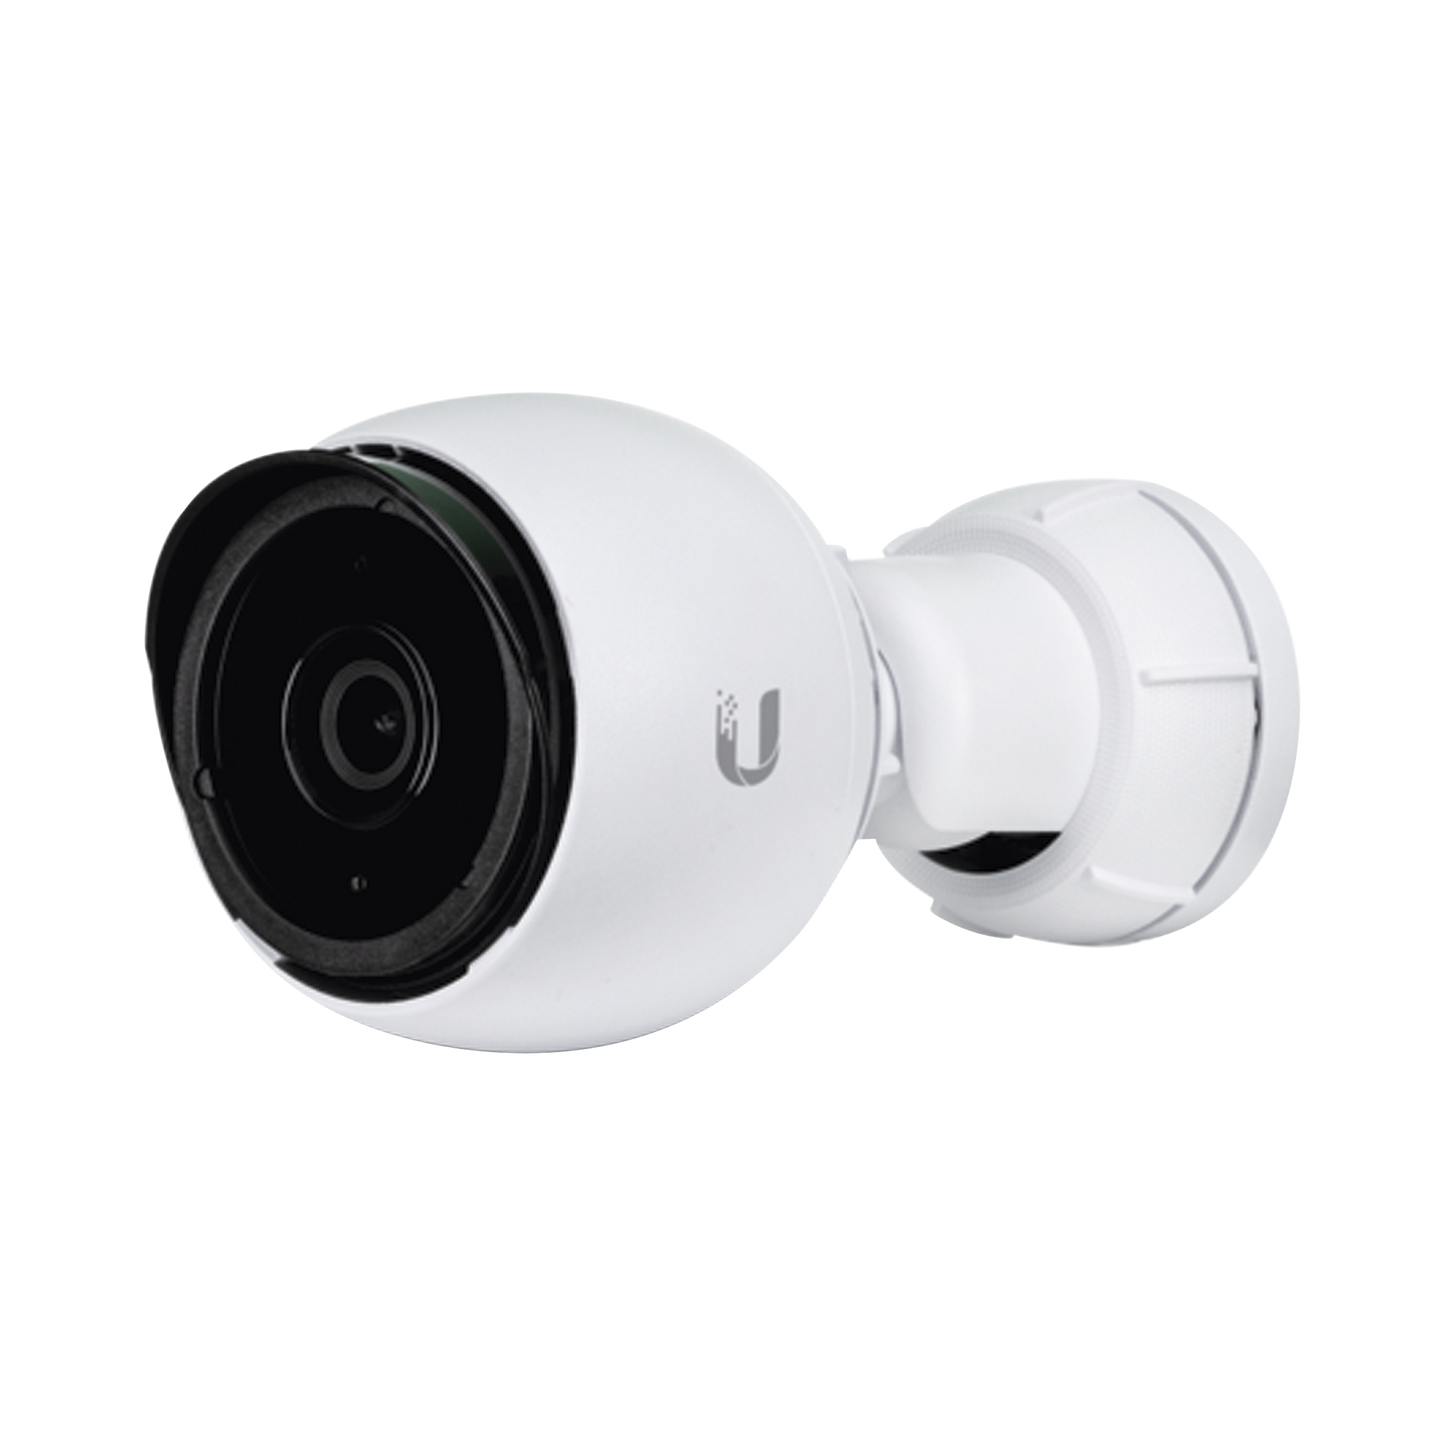 Cámara IP UniFi G4 Bullet resolución 4 MP (1440p) para interior y exterior, con micrófono incorporado, vista día y noche, PoE 802.3af